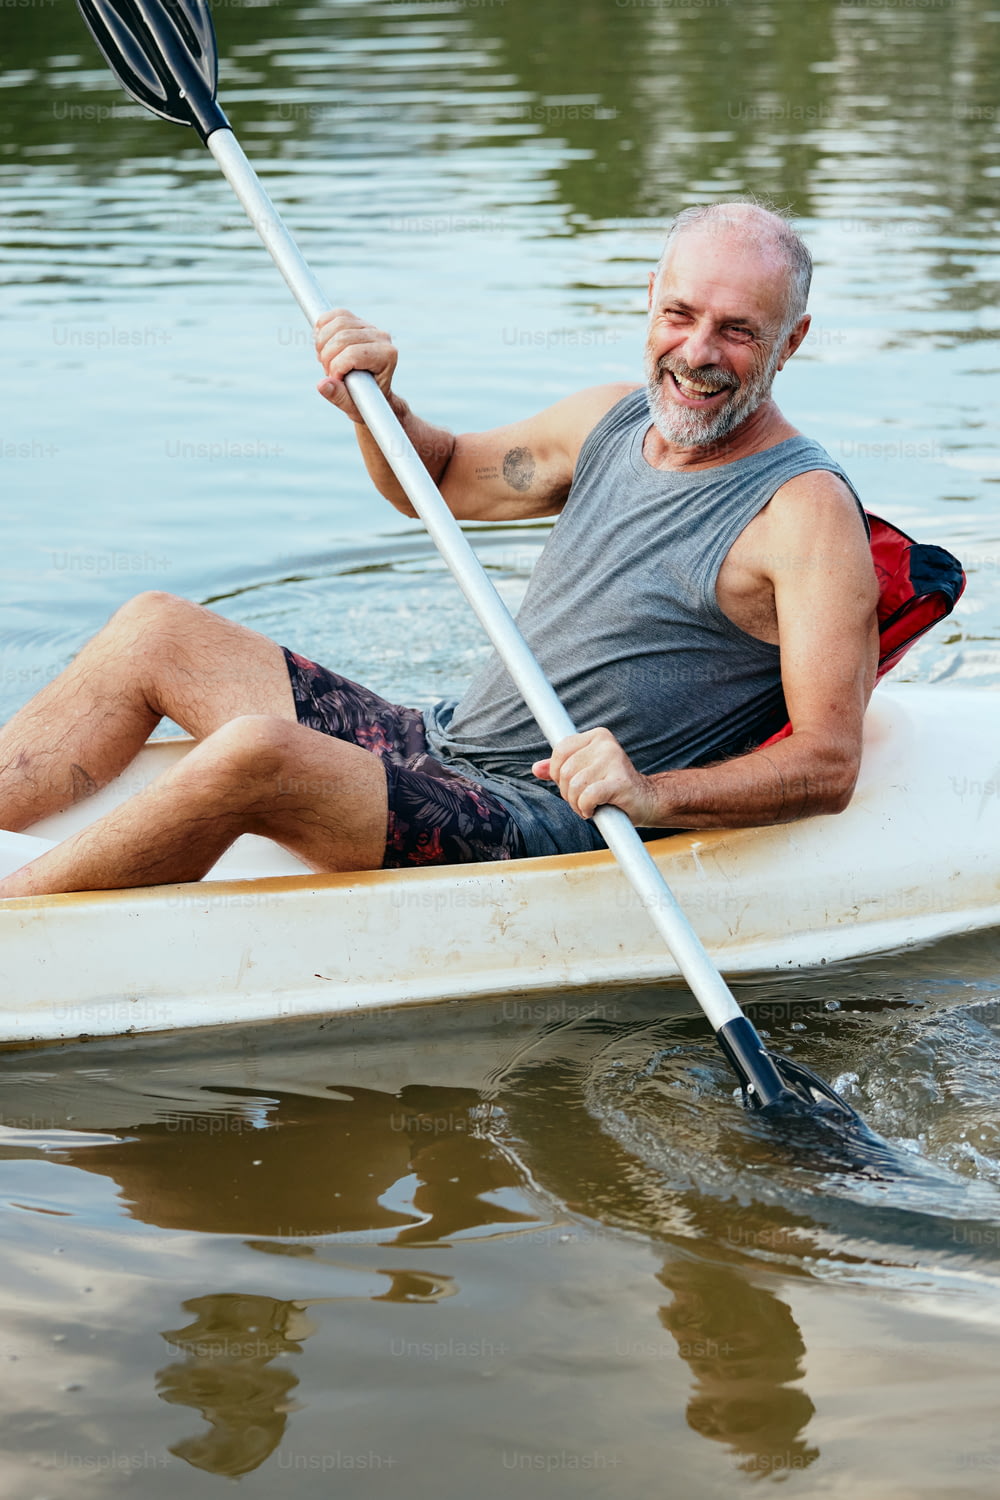 Ein Mann paddelt mit einem Kanu auf dem Wasser